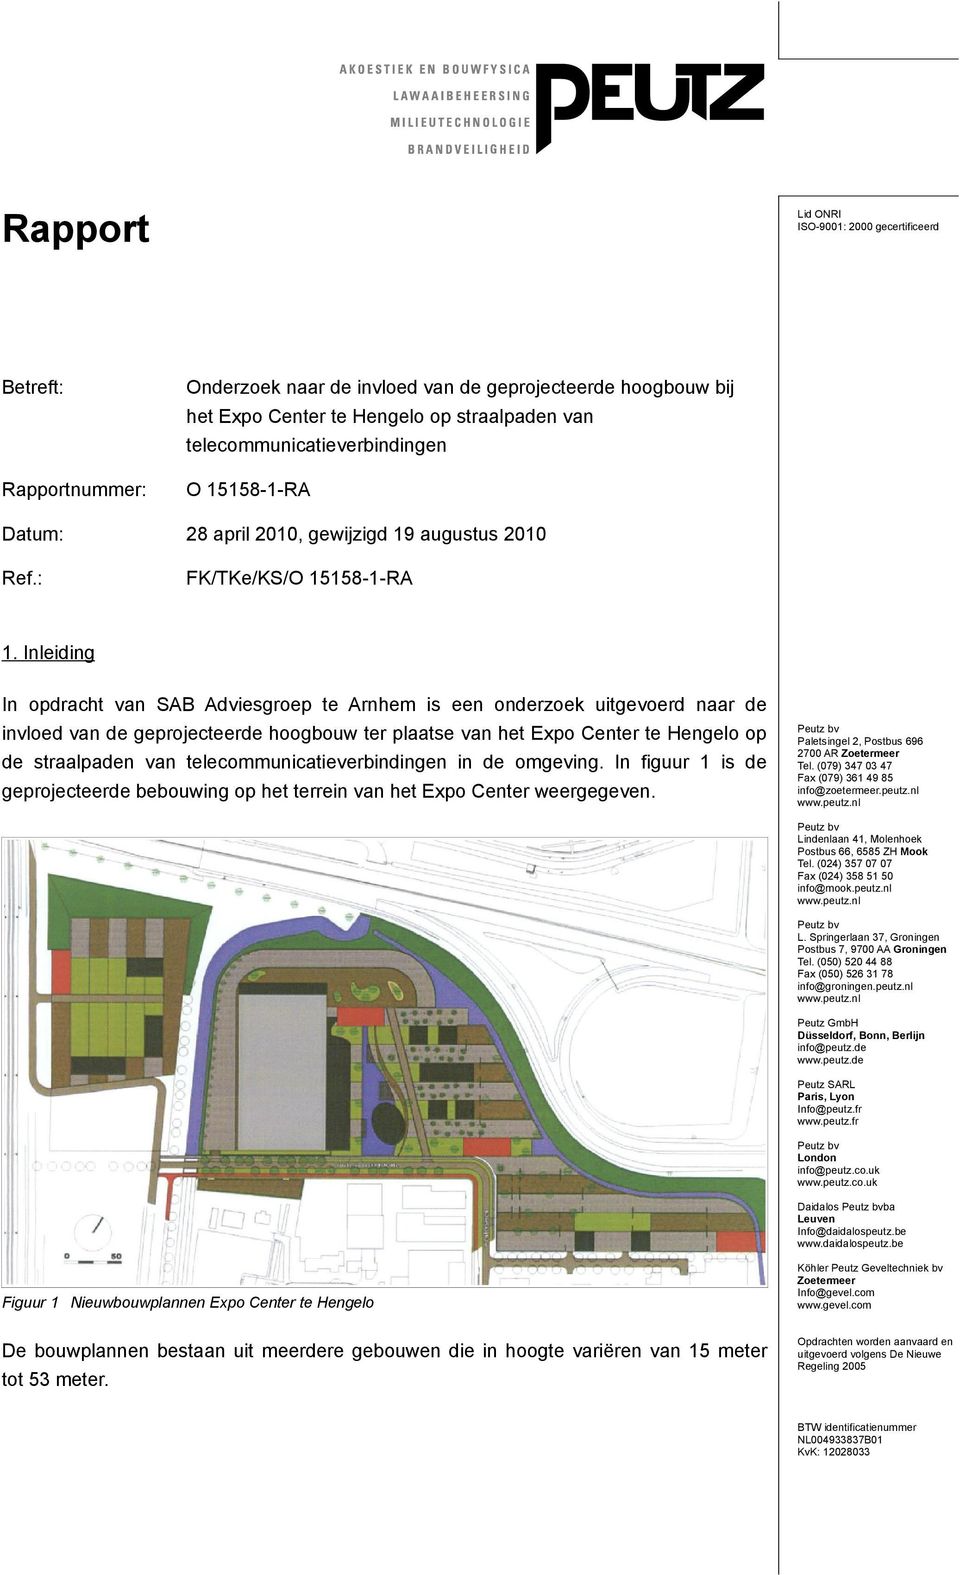 Inleiding In opdracht van SAB Adviesgroep te Arnhem is een onderzoek uitgevoerd naar de invloed van de geprojecteerde hoogbouw ter plaatse van het Expo Center te Hengelo op de straalpaden van